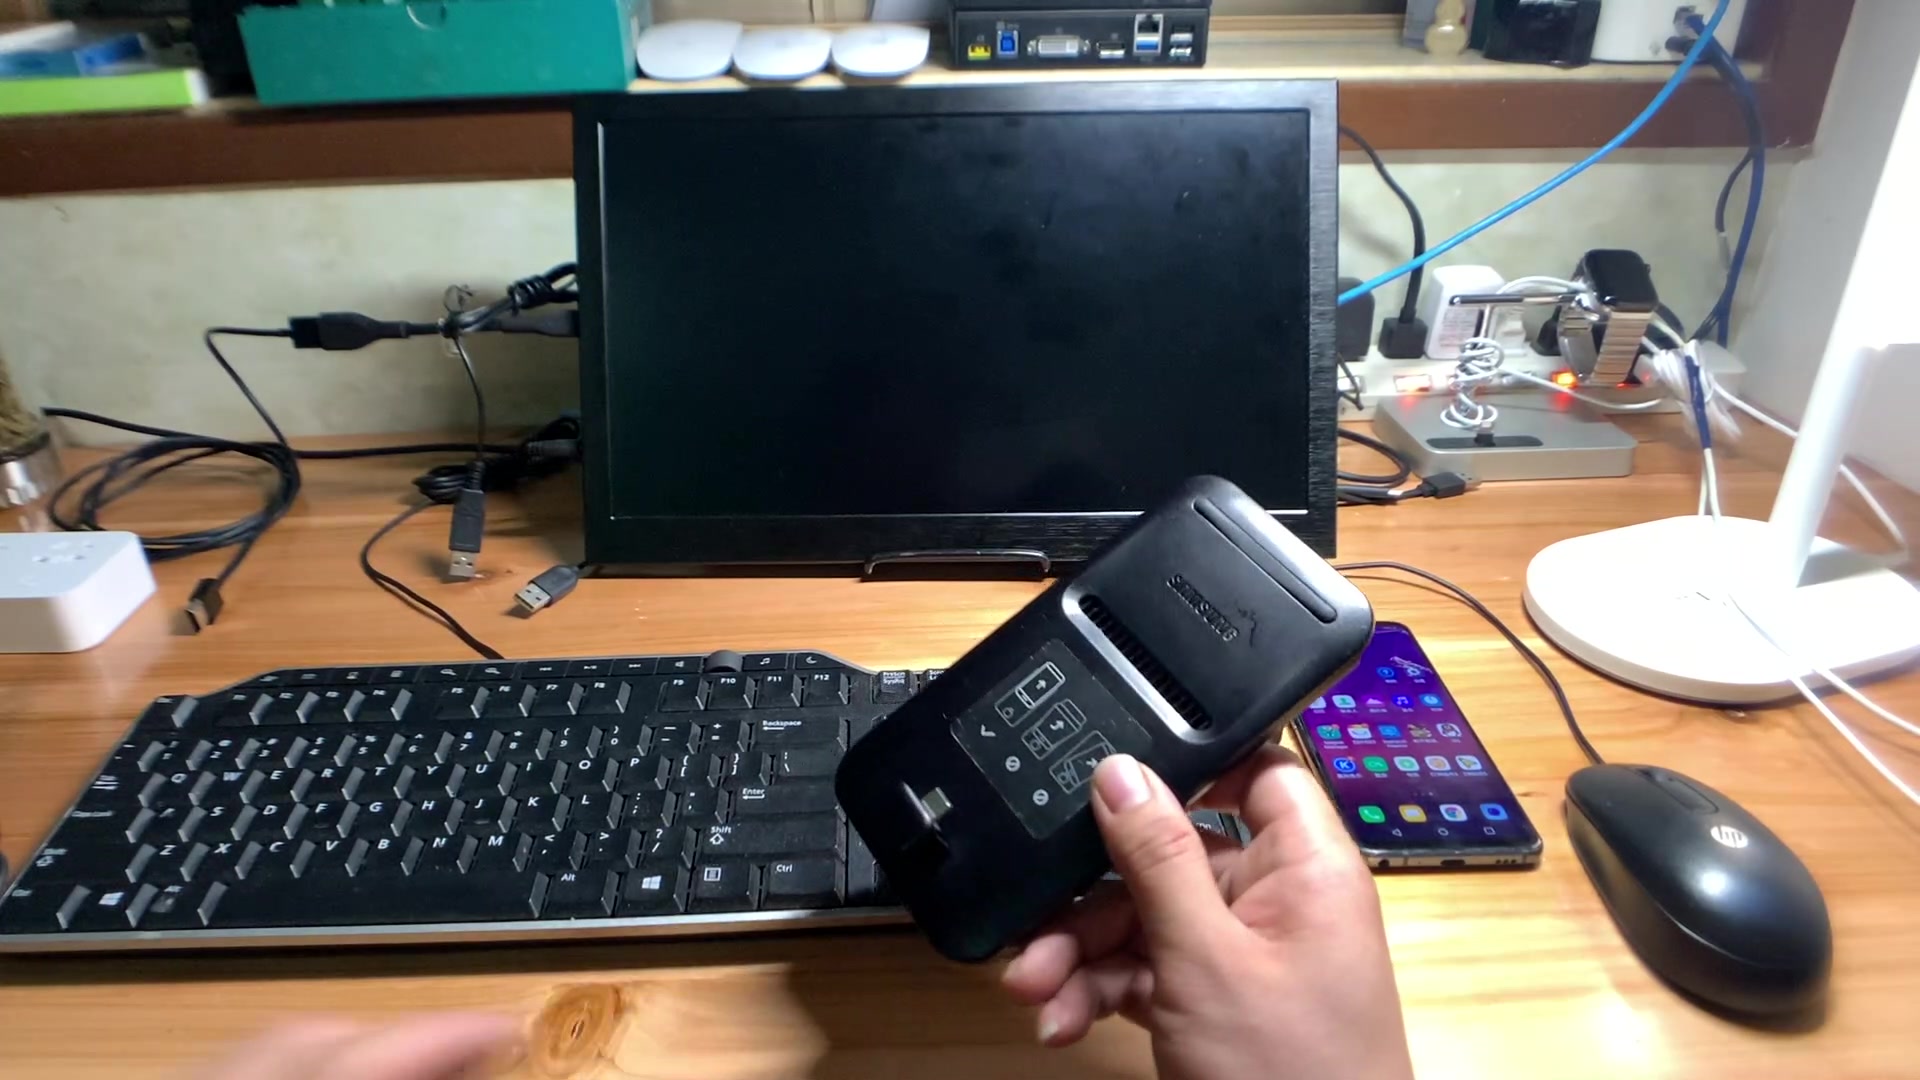 三星二代手机扩展坞dex pad安卓手机变身便携式小电脑办公外接显示器鼠标键盘